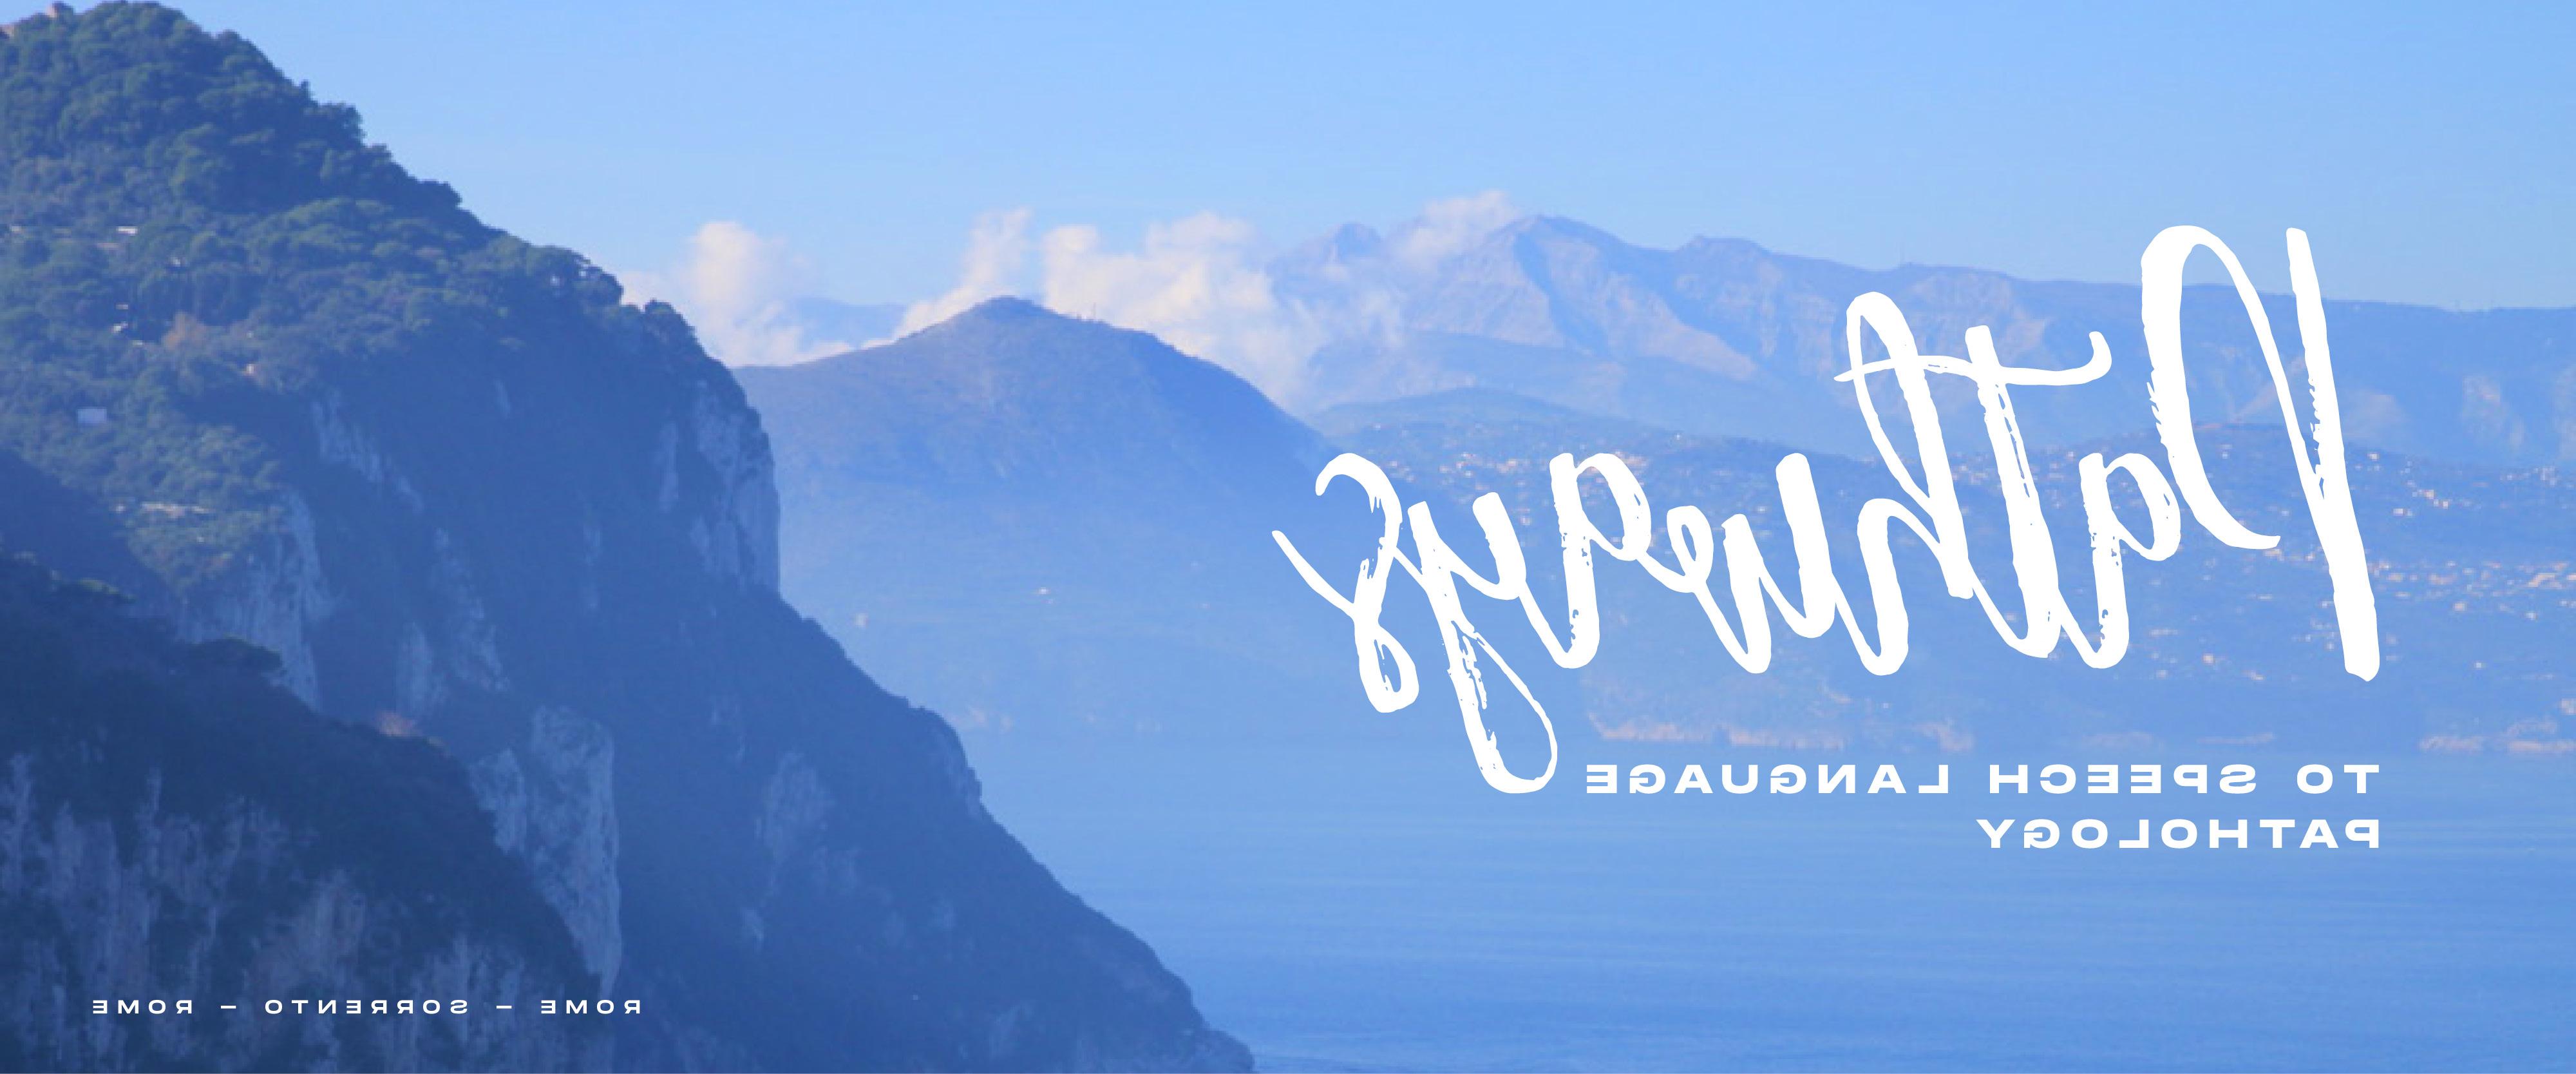 Sorrento Blue Capri Header